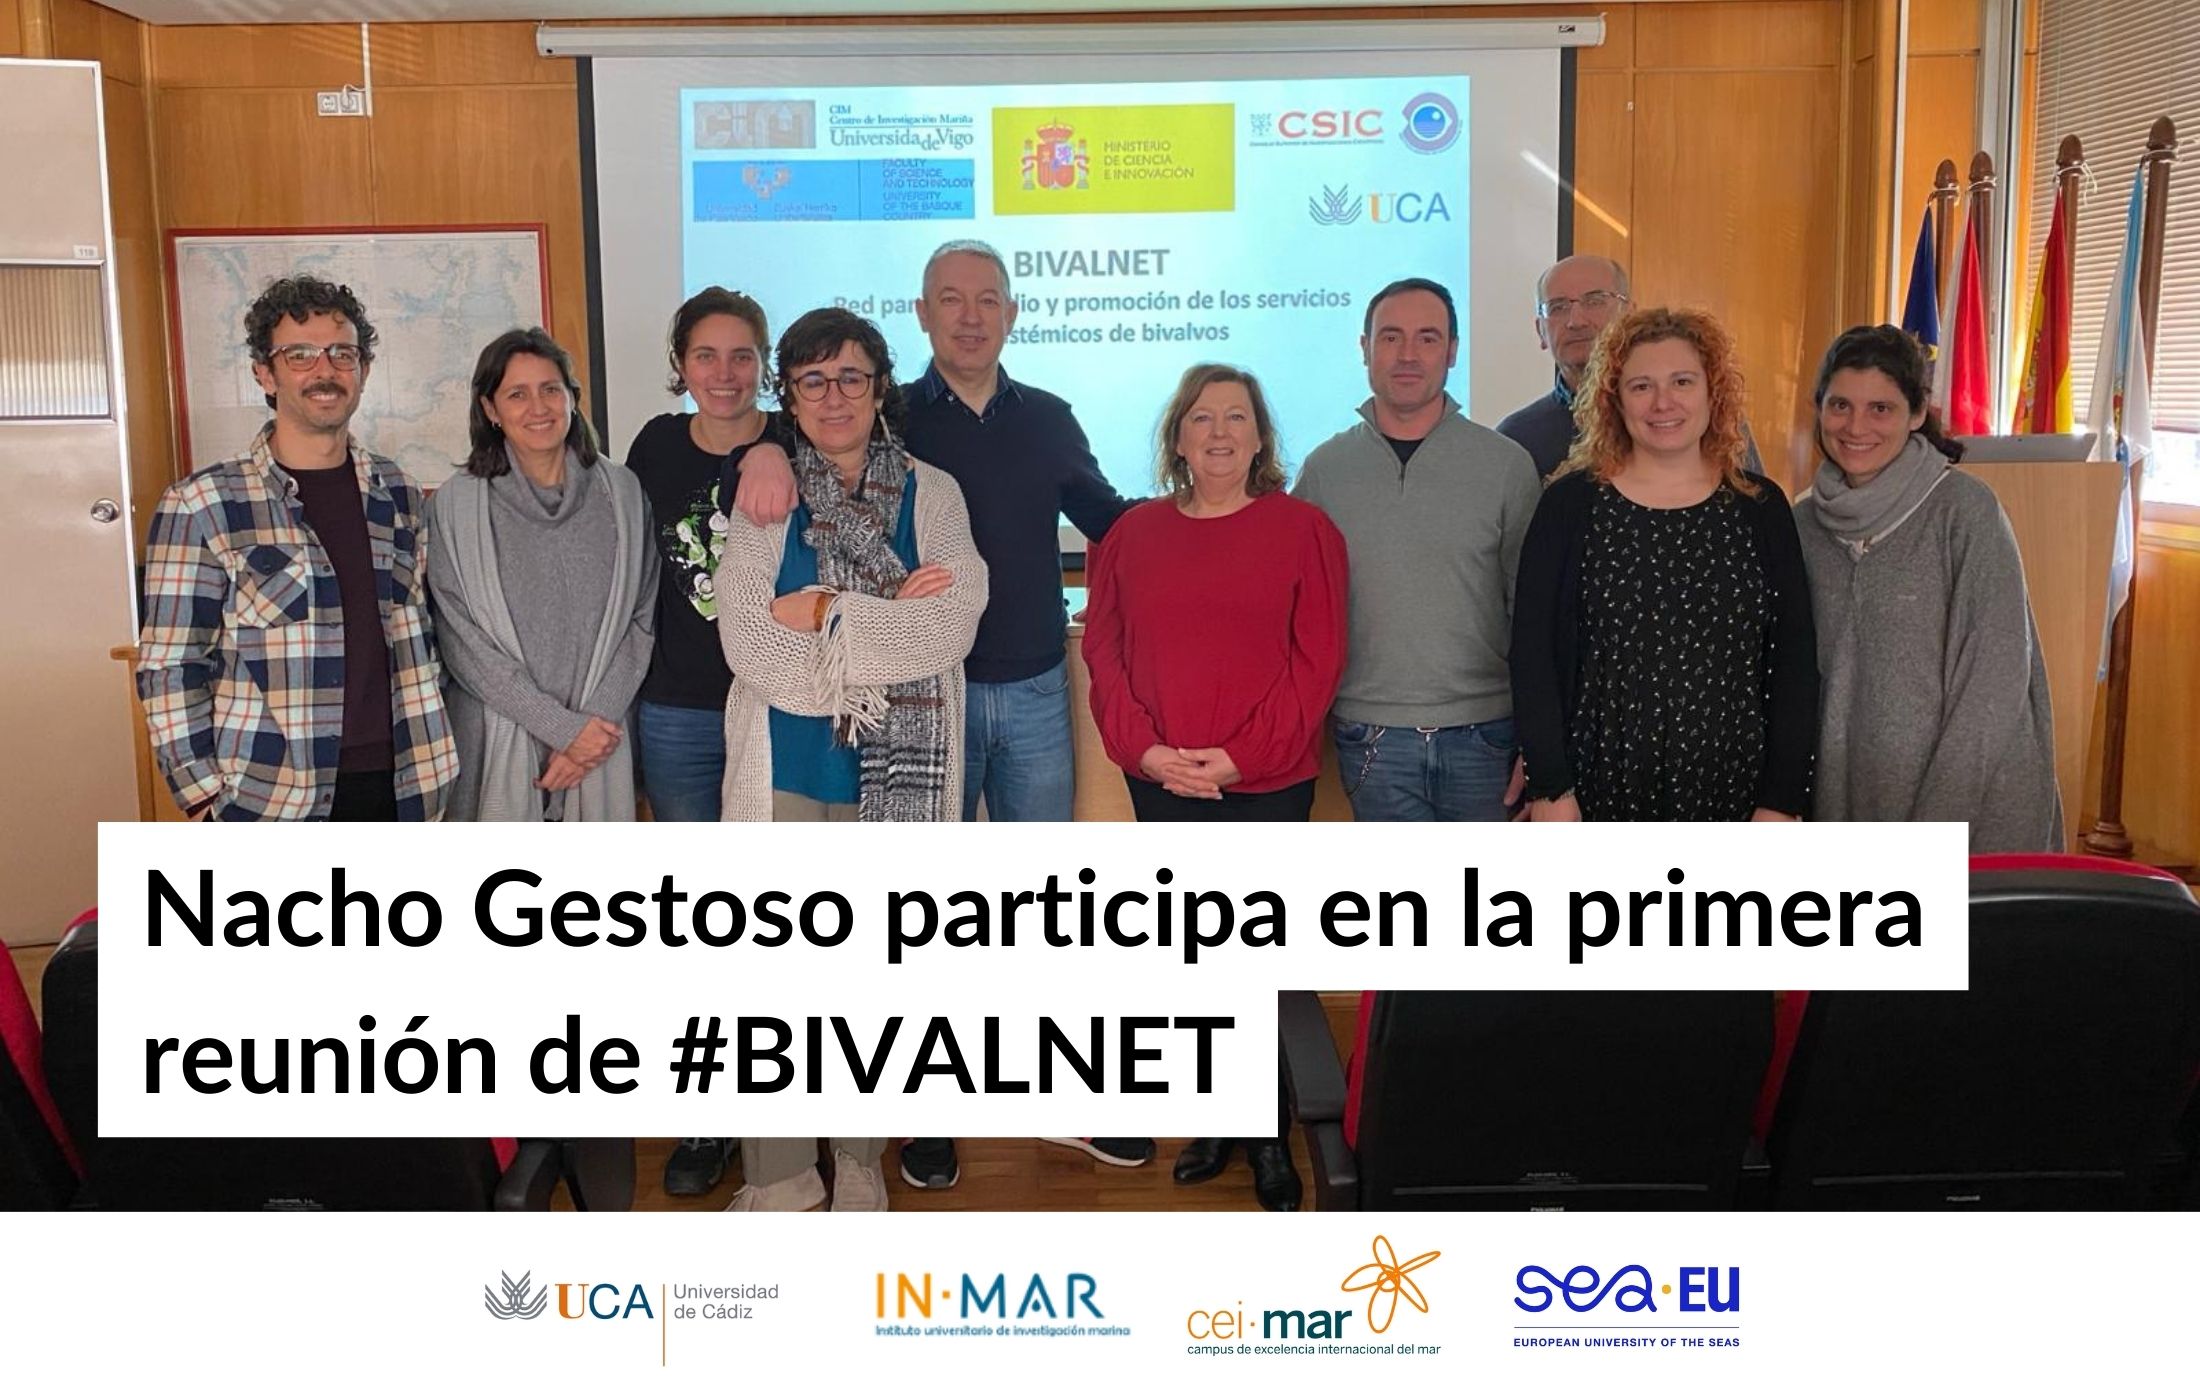 El investigador Nacho Gestoso participa en la primera reunión de la red #BIVALNET